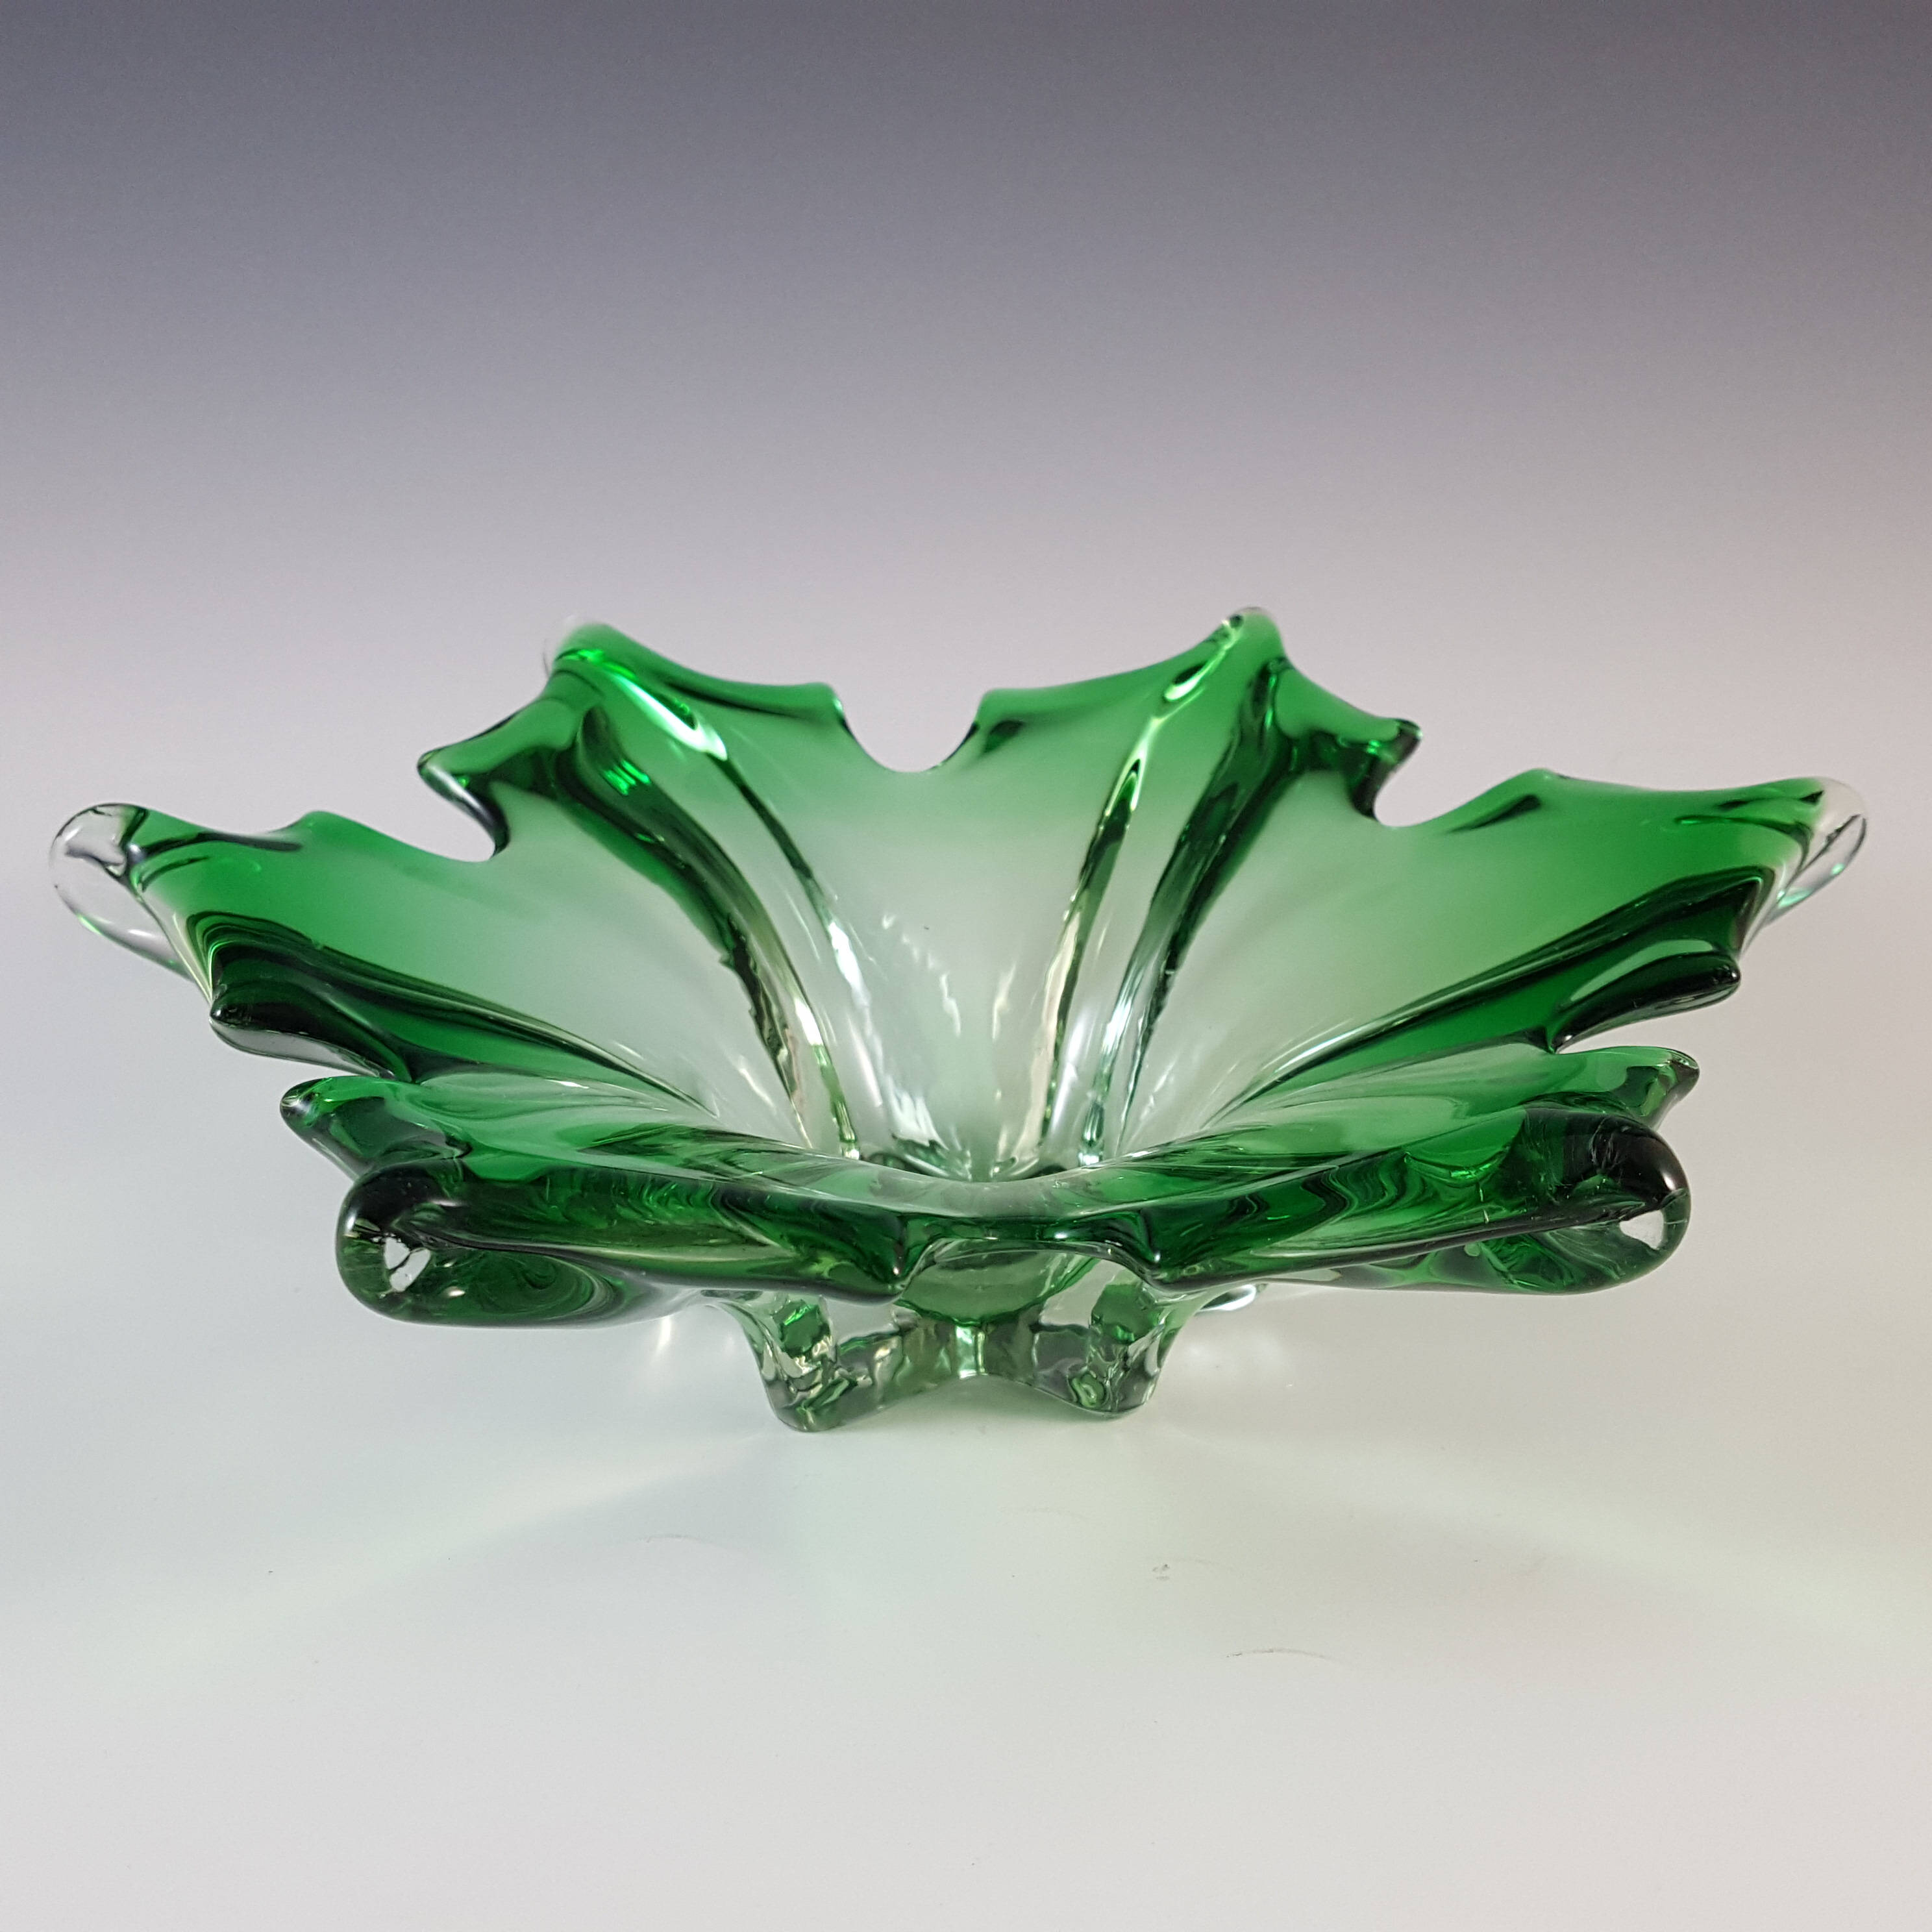 Cristallo Venezia CCC Murano Green & Clear Sommerso Glass Bowl - Click Image to Close